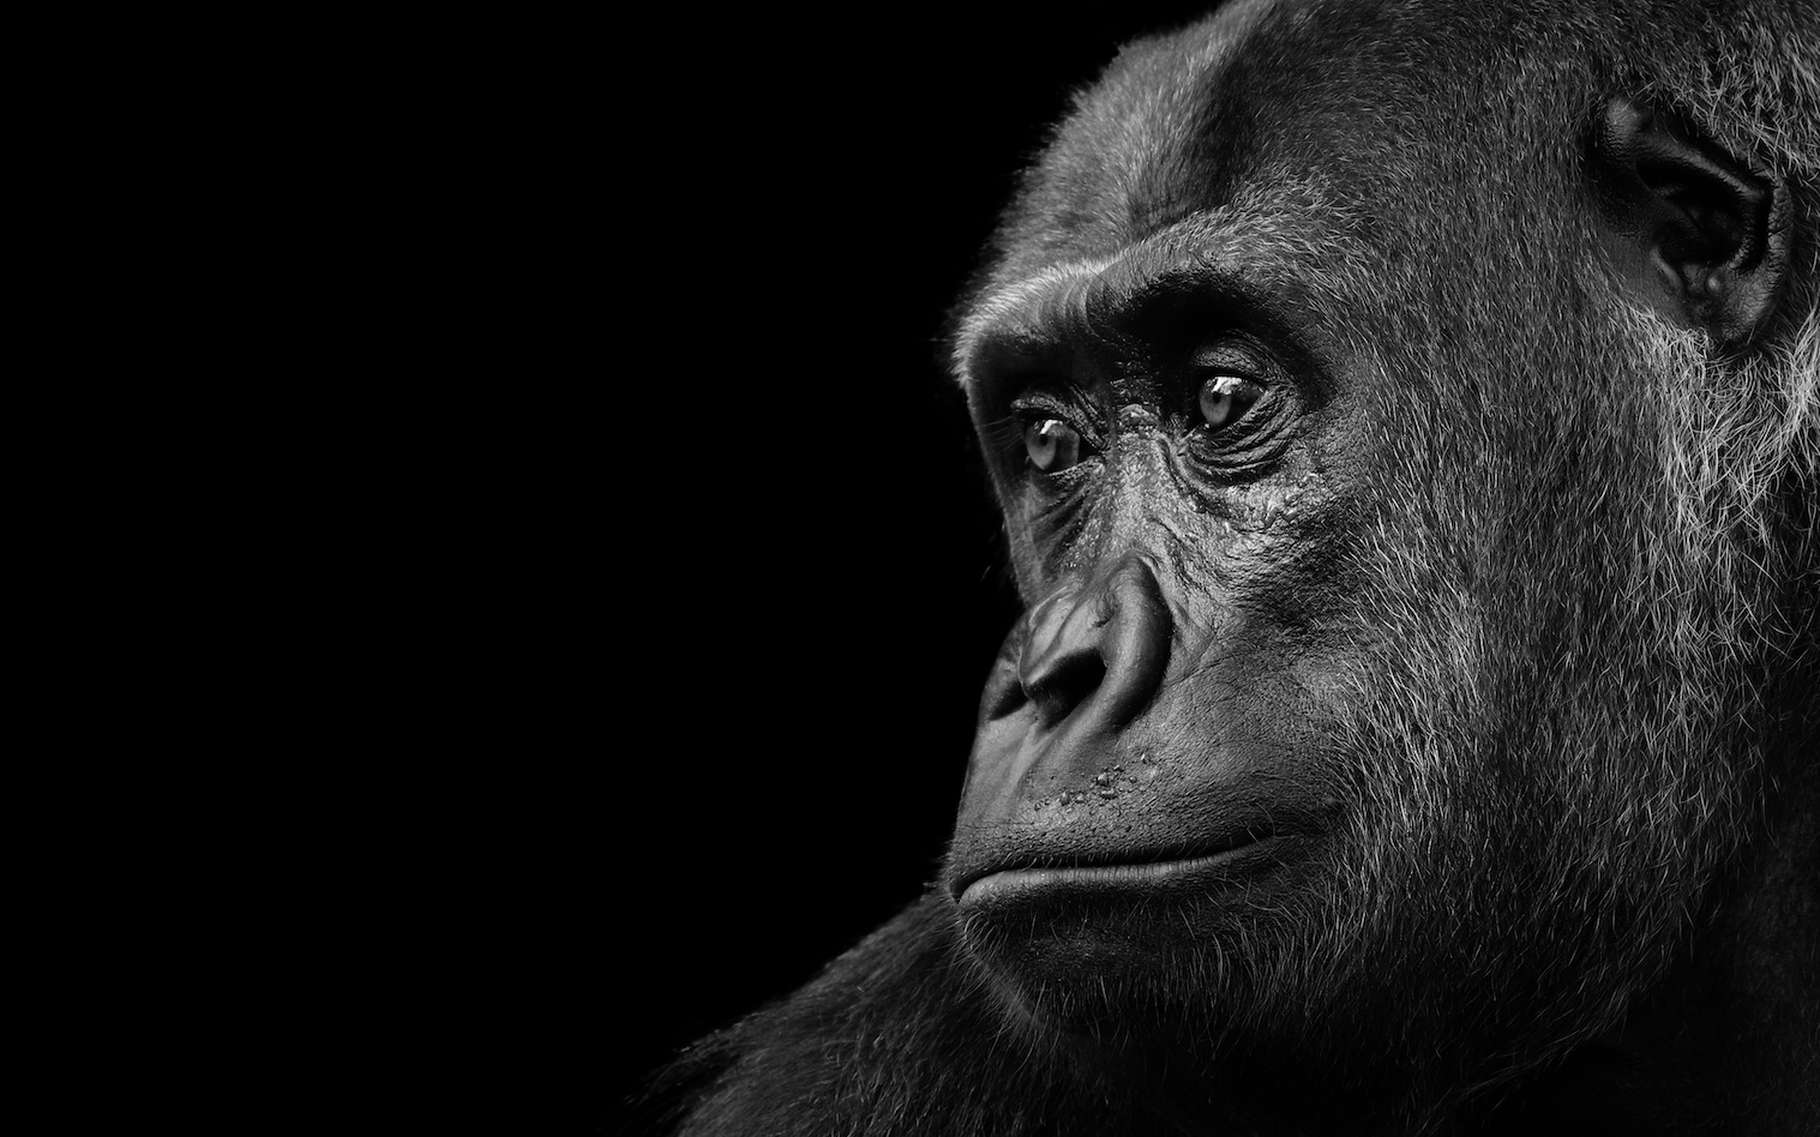 Bêtes de science : Koko, ce gorille qui parlait… avec ses mains !